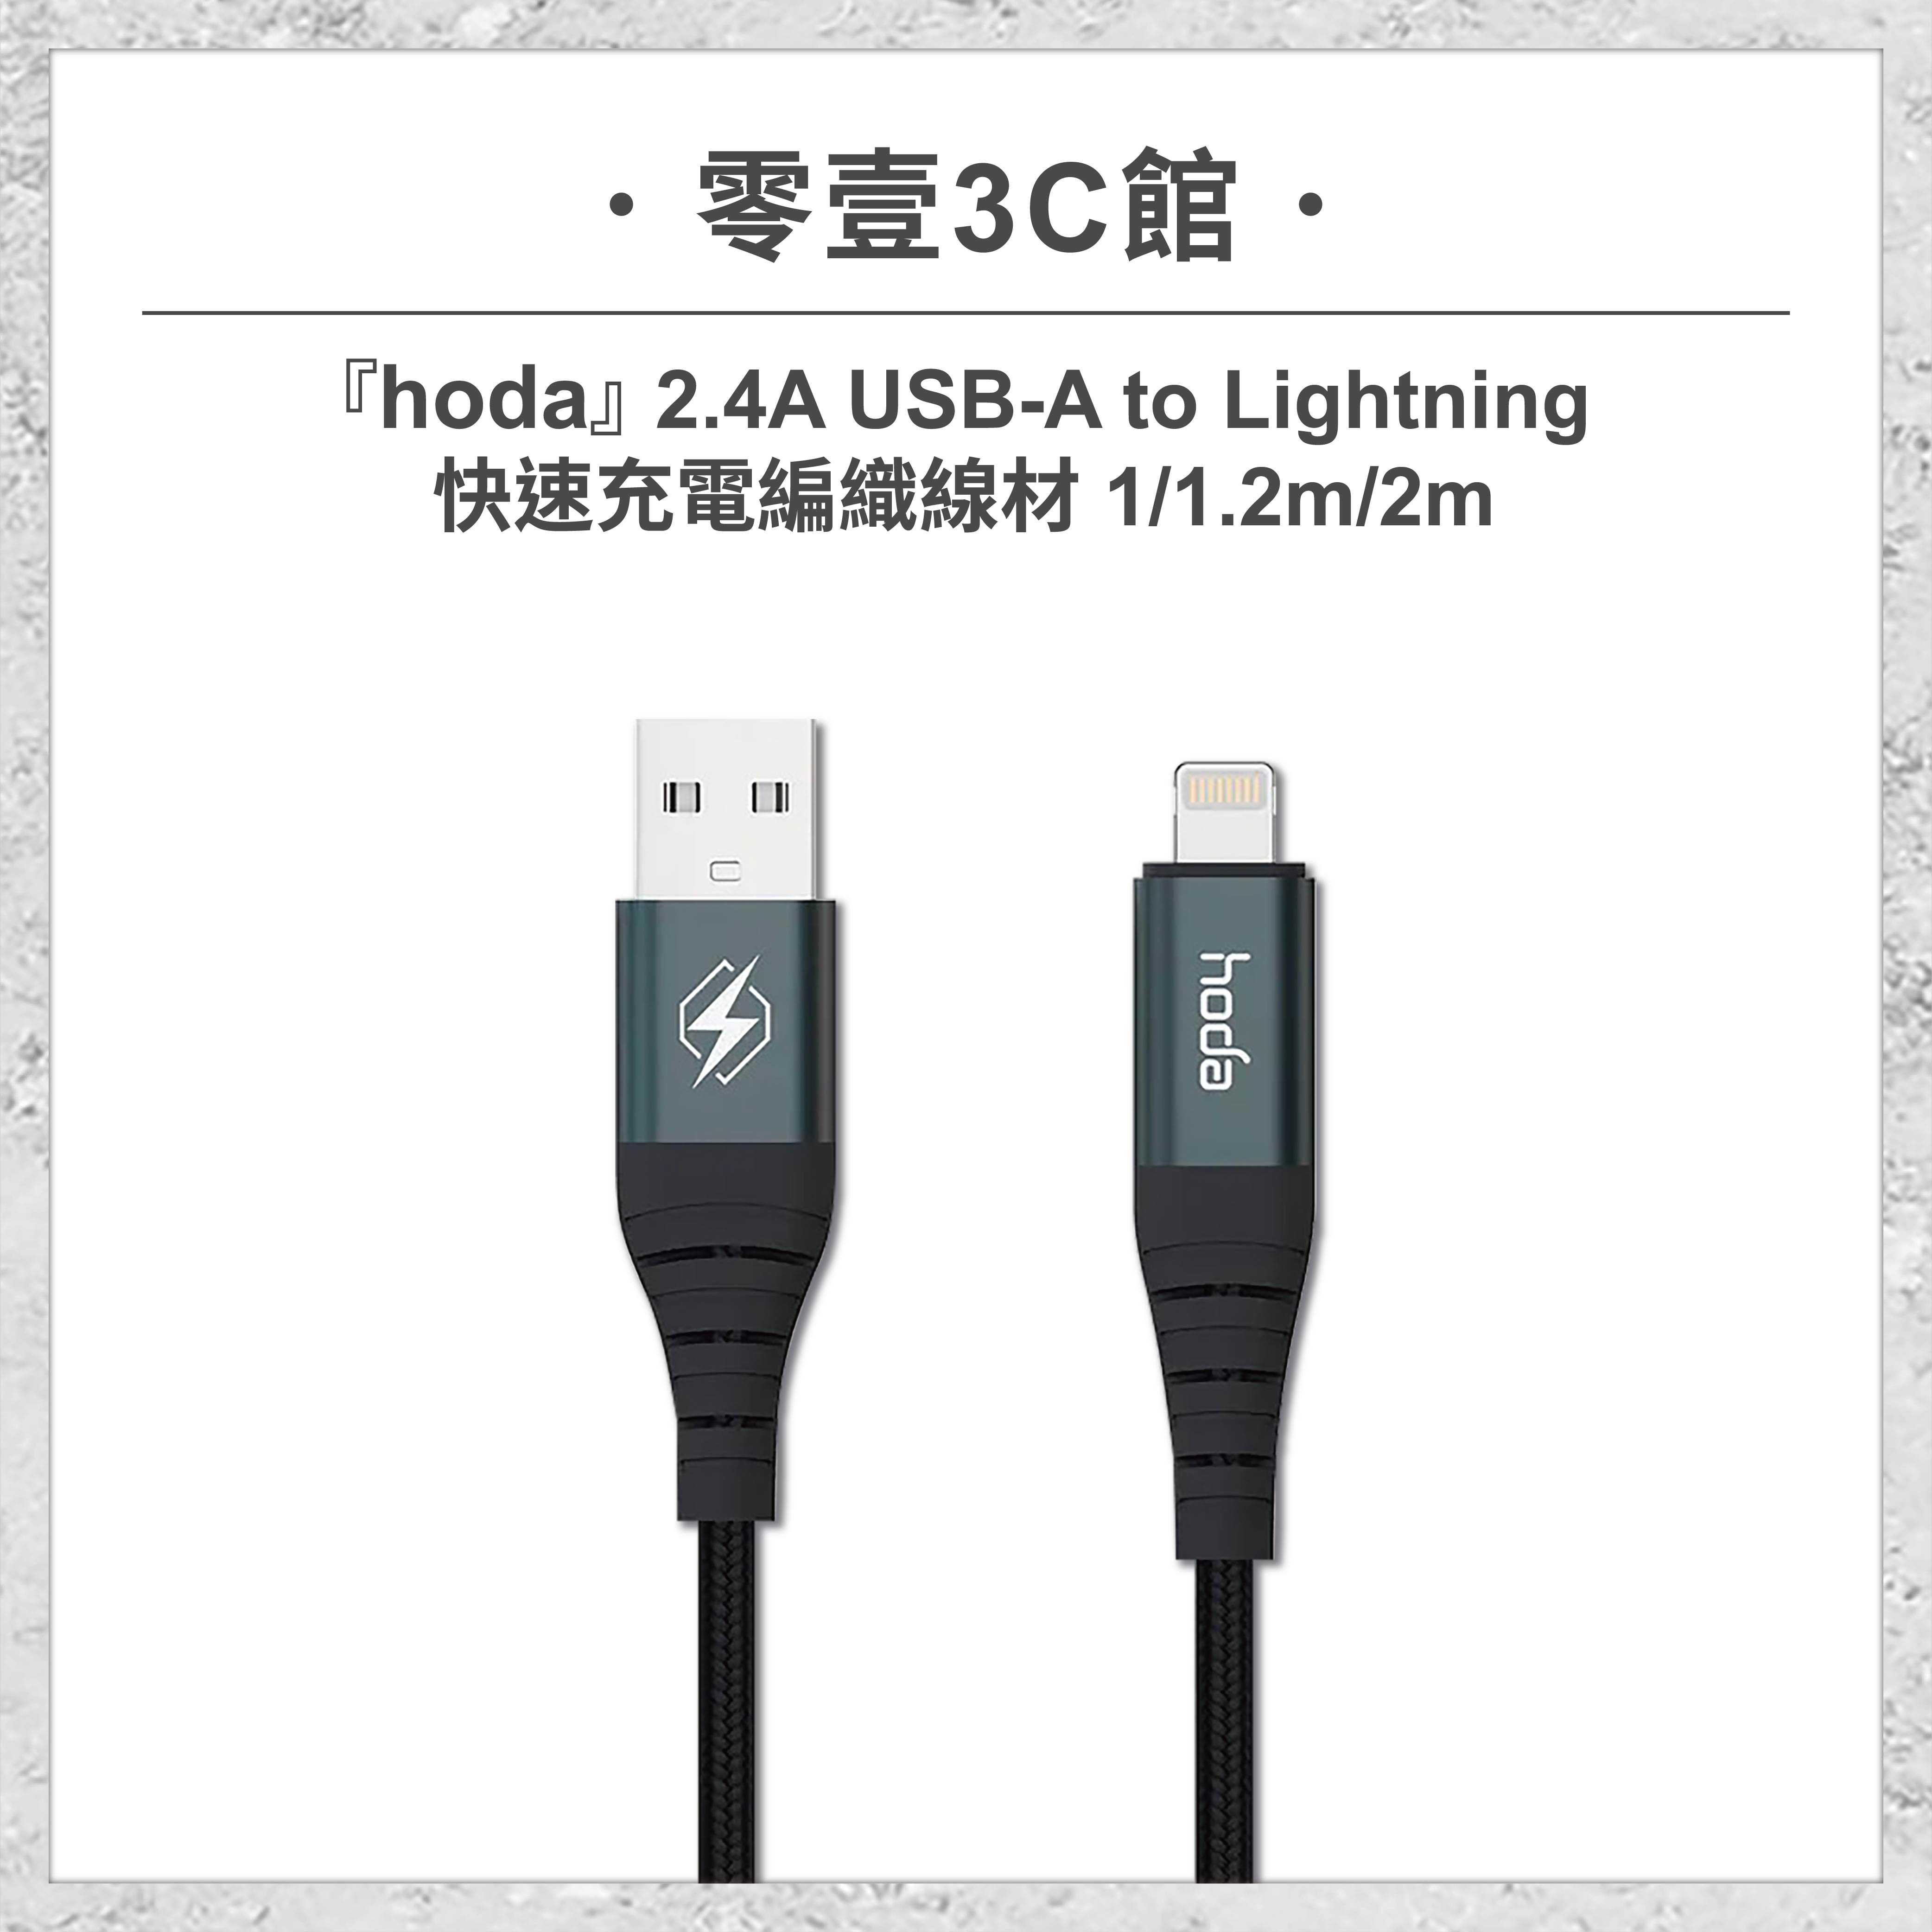 【hoda】2.4A USB-A to Lightning 快速充電編織線材 100cm/180cm 快速充電編織線材 手機充電線 快充線 快速充電